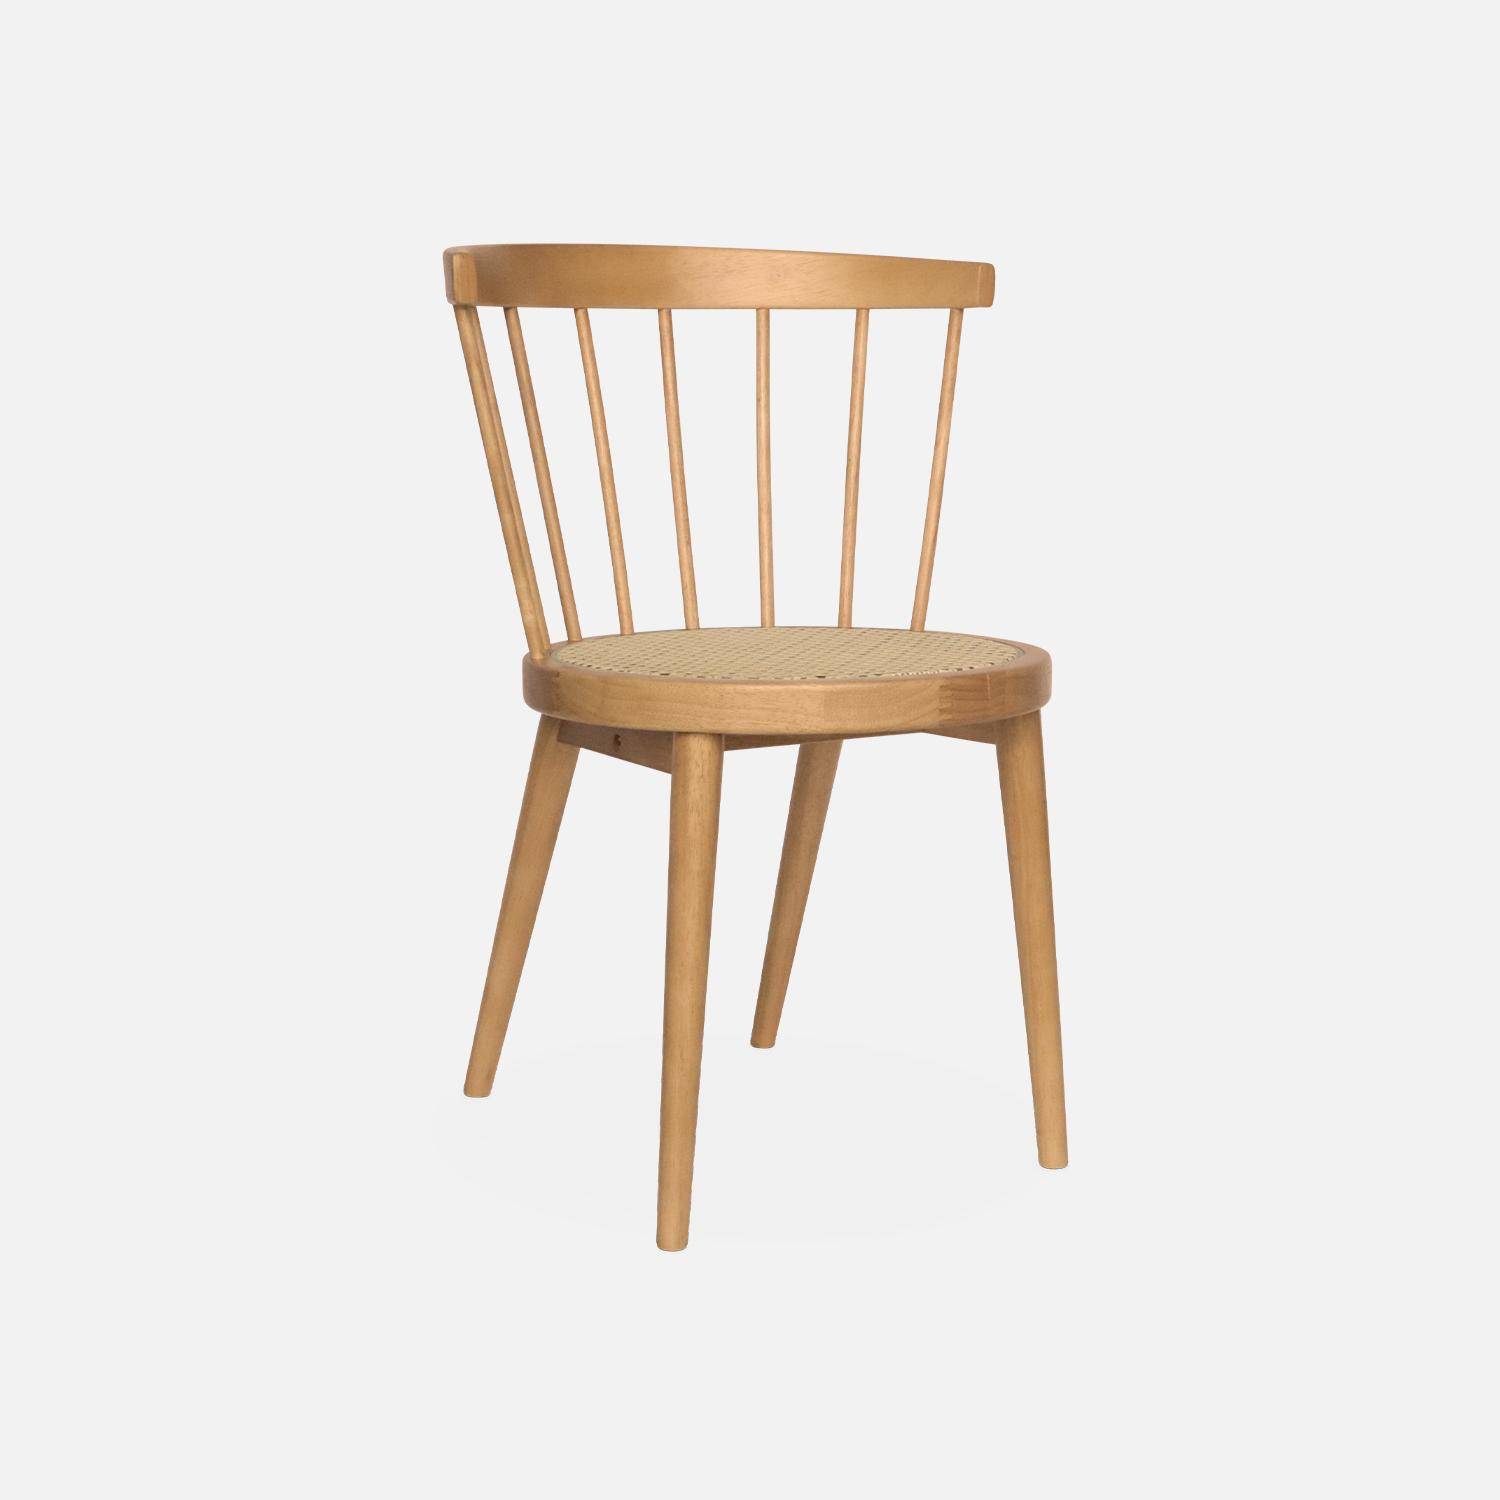 Set di 2 sedie in legno naturale e canna, Nora, L 54 x P 54 x H 76,5 cm. Photo5